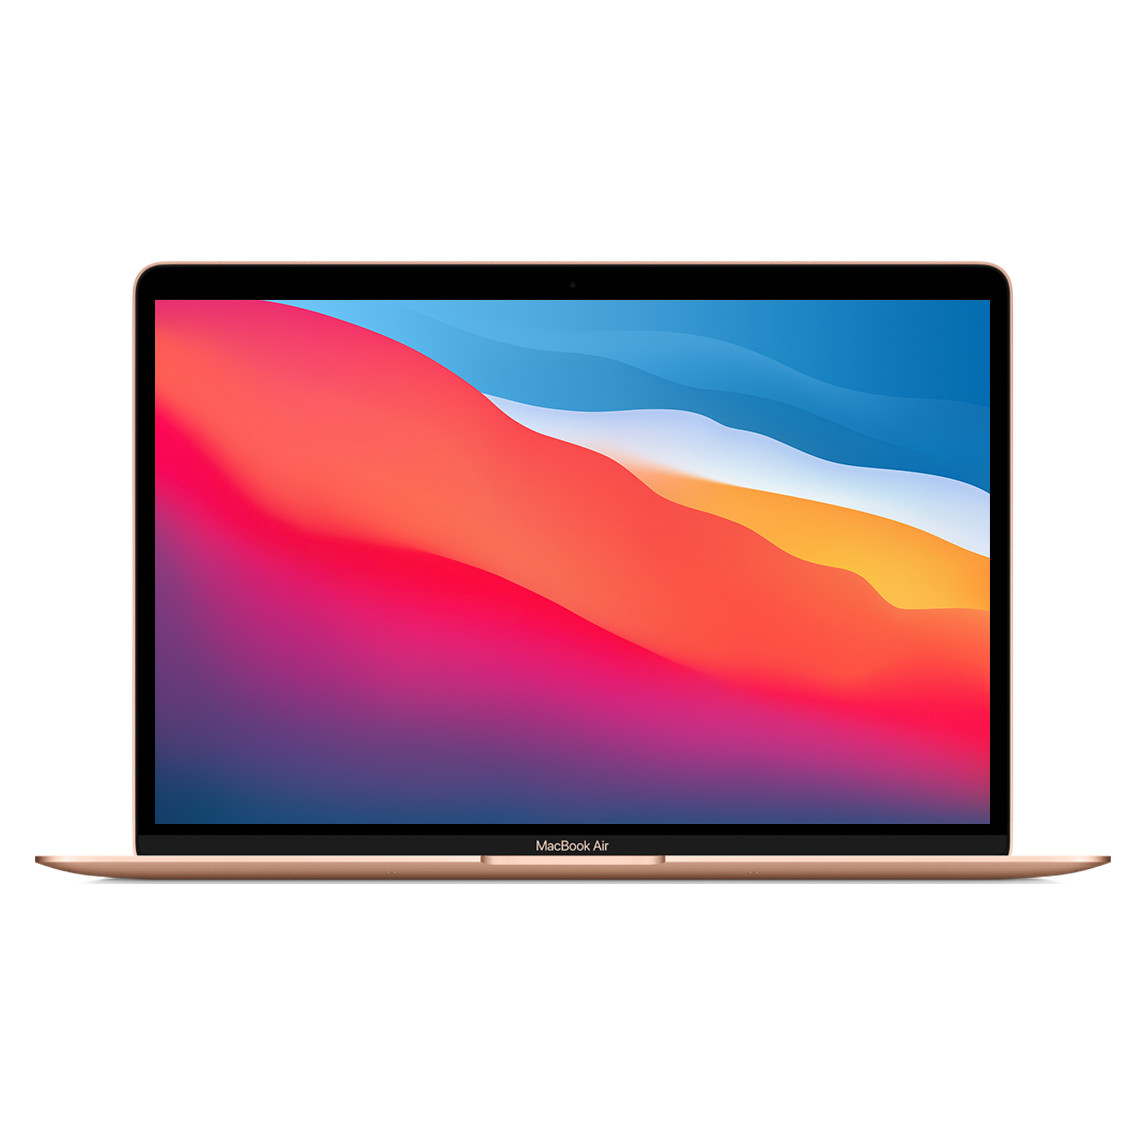 呈打开状态的银色 13.3 英寸 MacBook Air，展示细窄边框、FaceTime 高清摄像头和曲边设计。